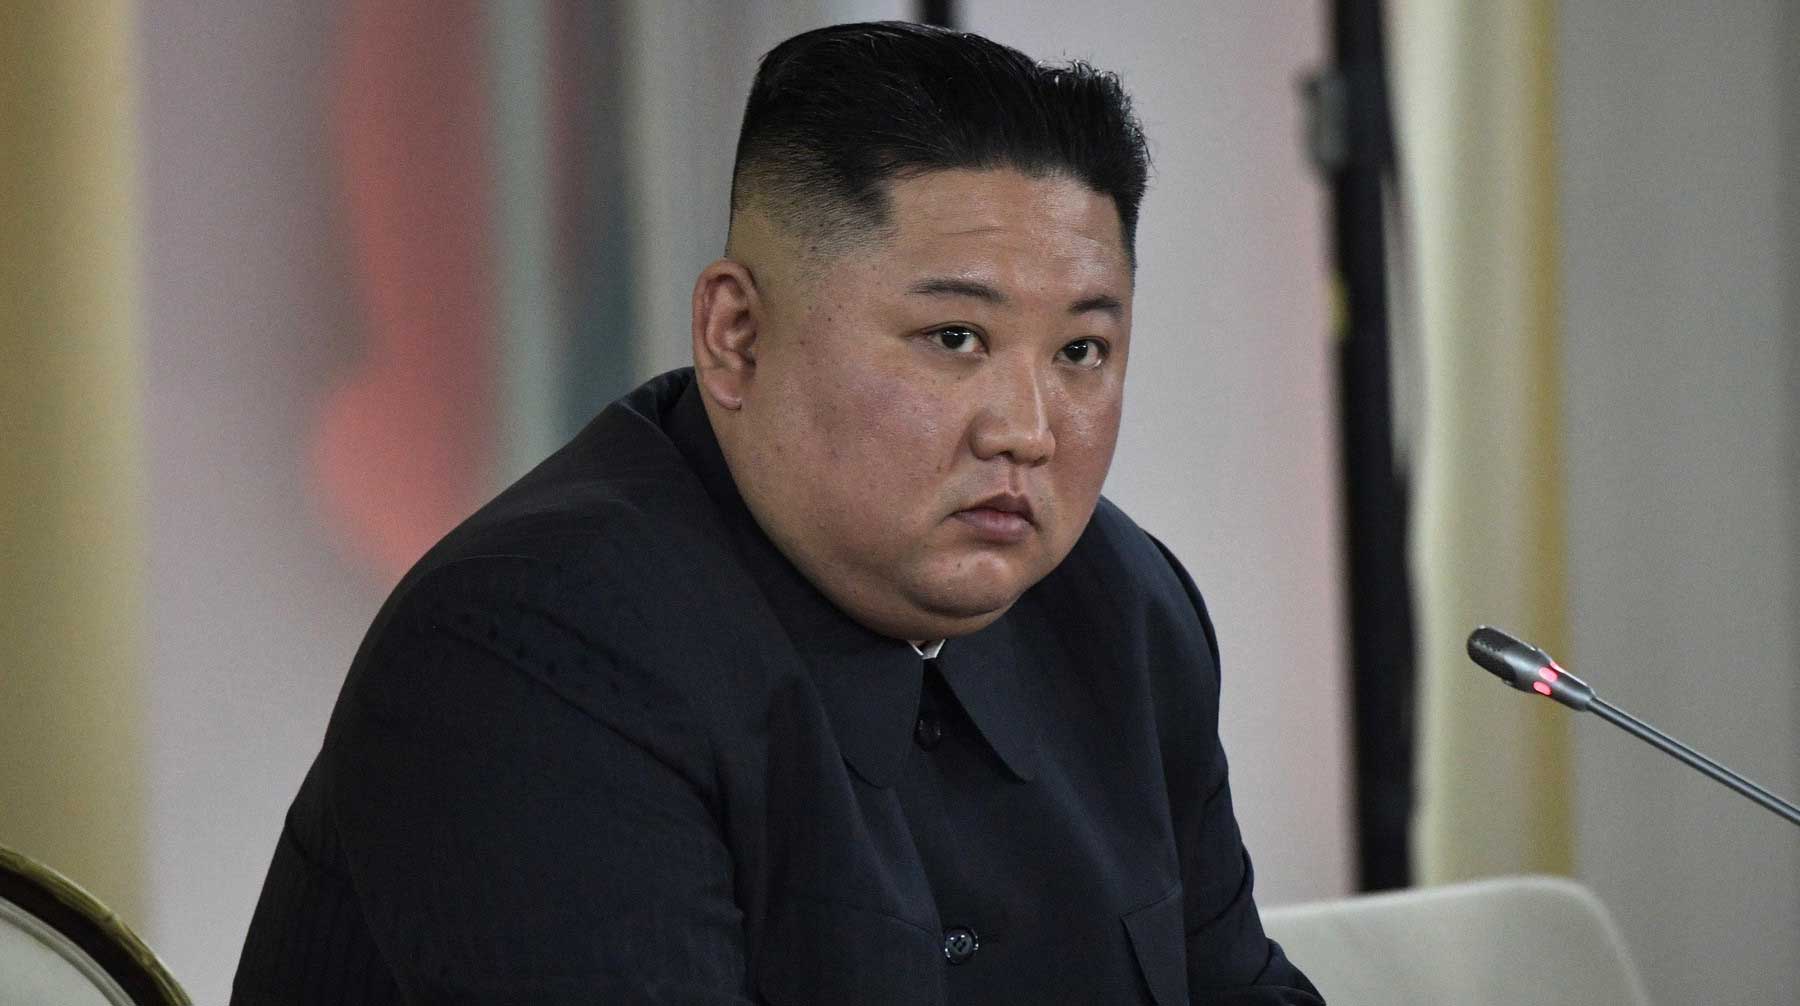 Пресс-секретарь президента РФ отметил высокий уровень подготовленности северокорейского главы Фото: © GLOBAL LOOK press / Kremlin Pool